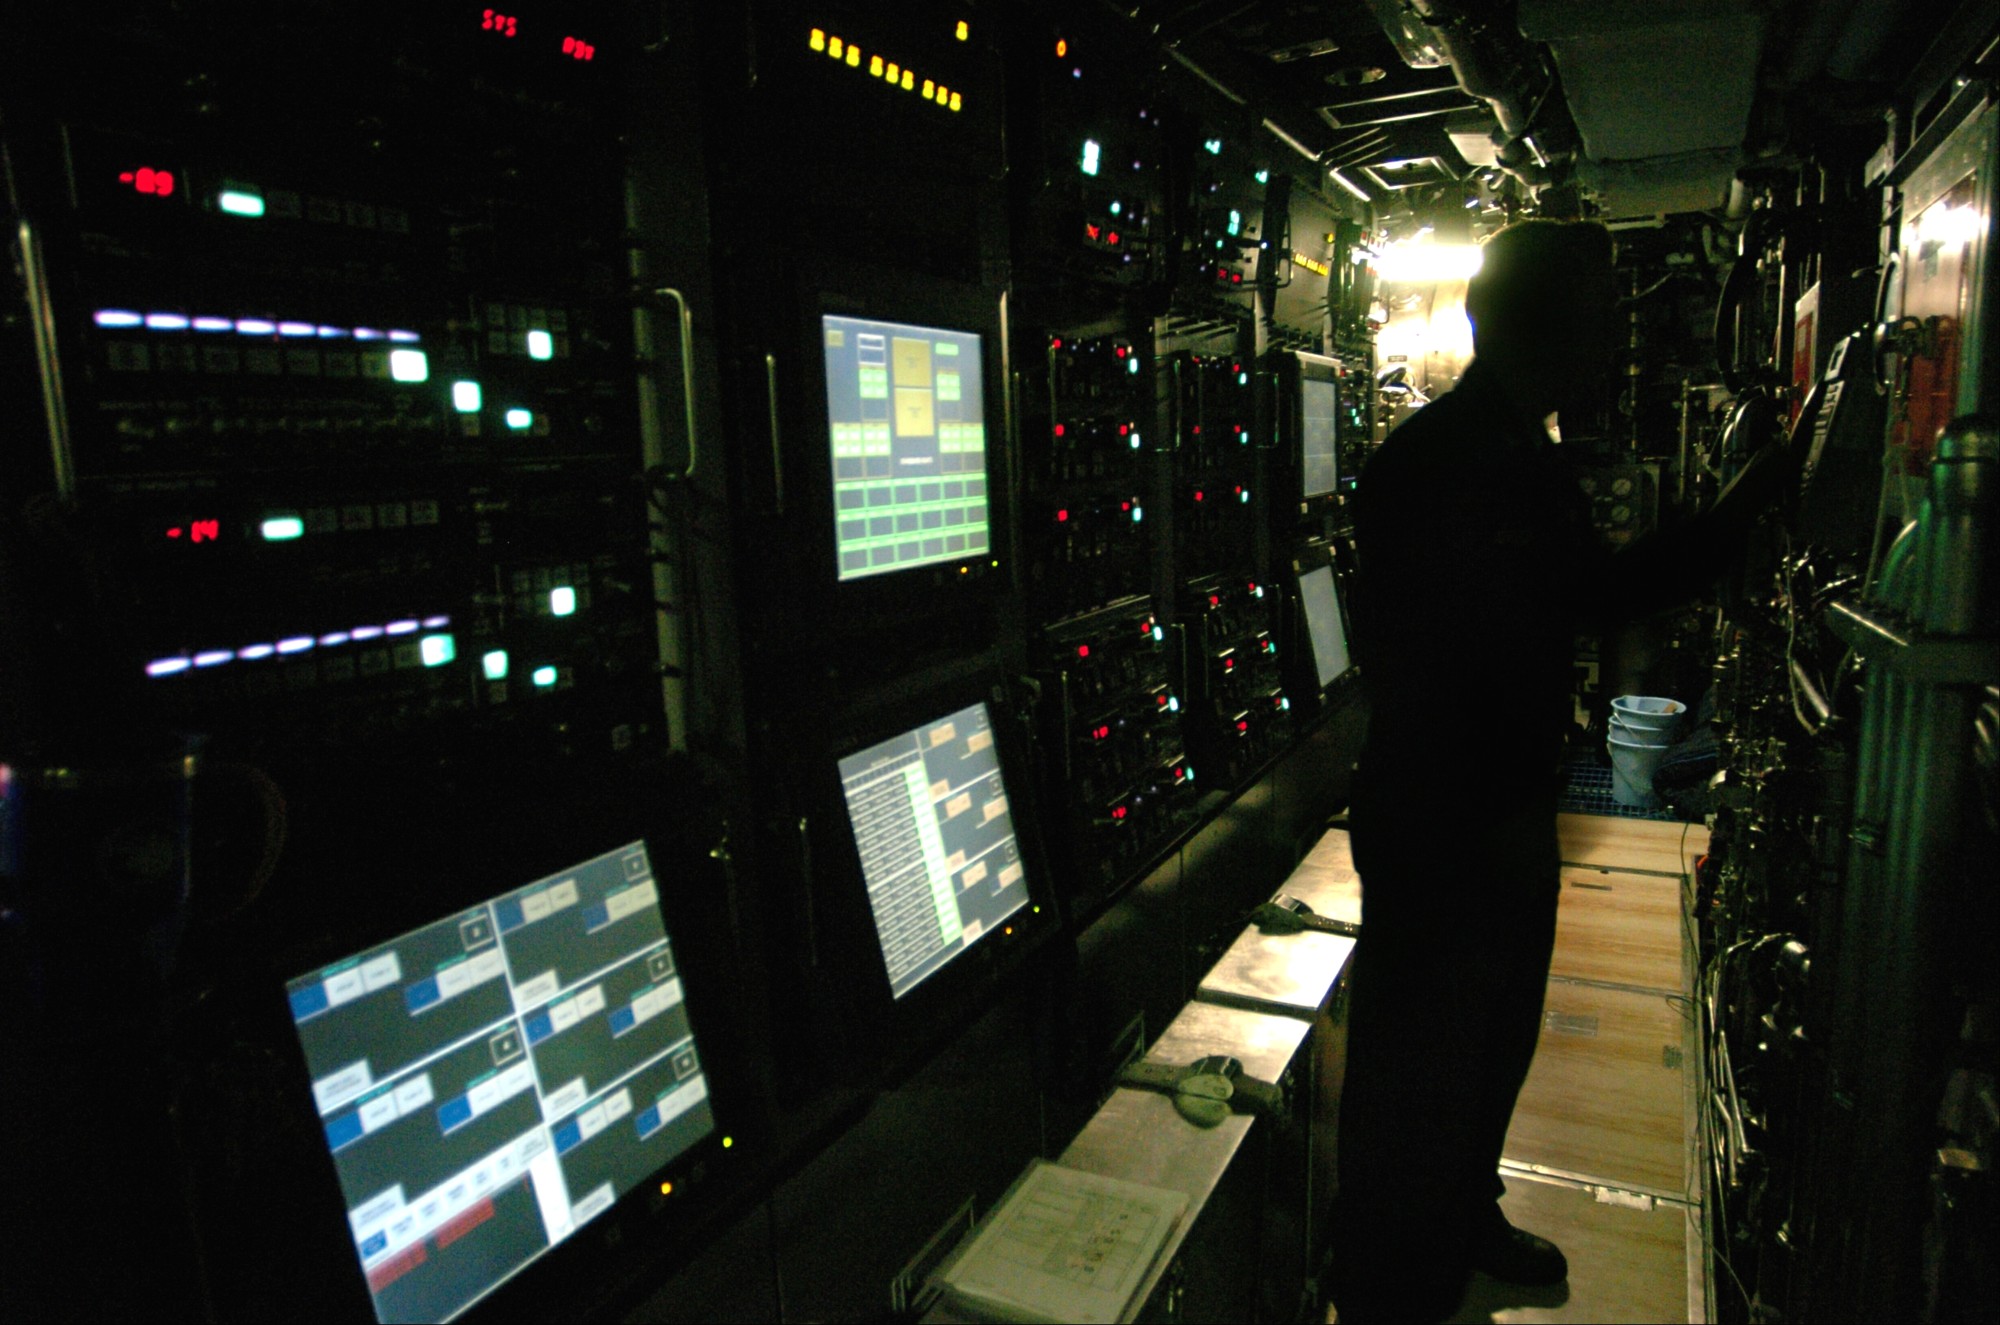 ssn-774 uss virginia attack submarine navy 2004 35 interieur inside